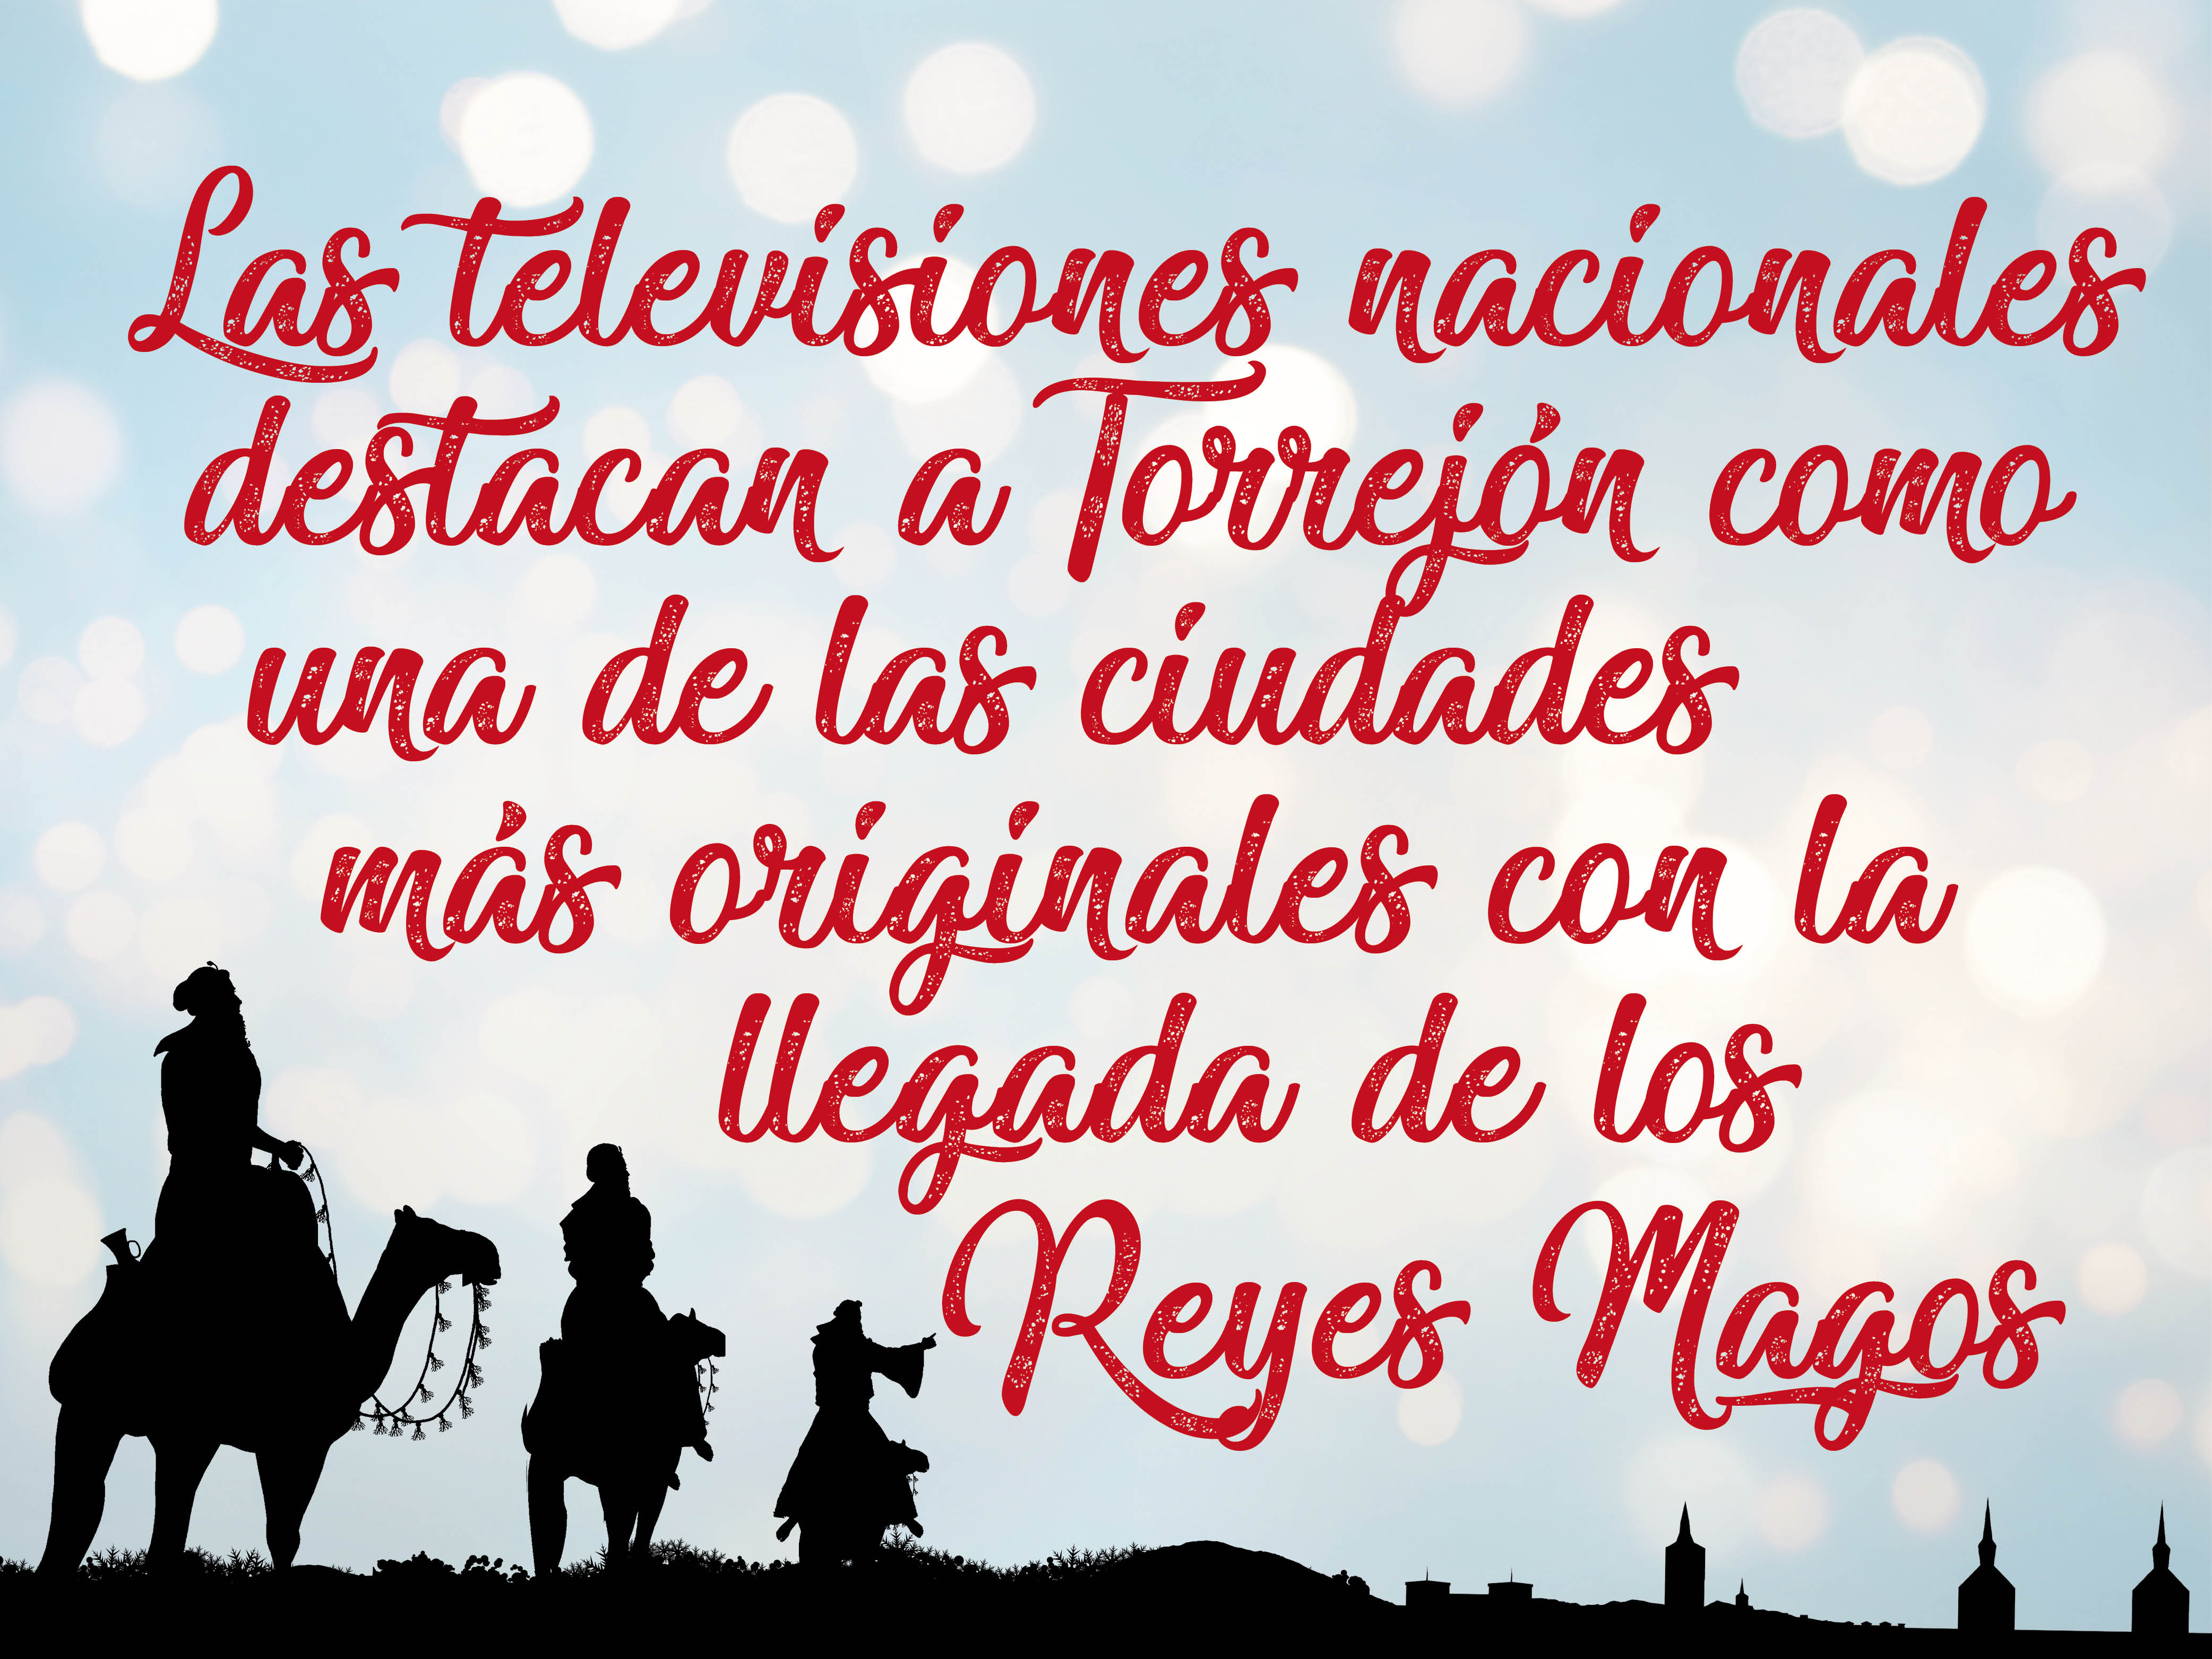 Los informativos de las televisiones nacionales destacan a Torrejón de Ardoz como una de las principales ciudades de España donde los Reyes Magos llegaron de una forma más original y sorprendente